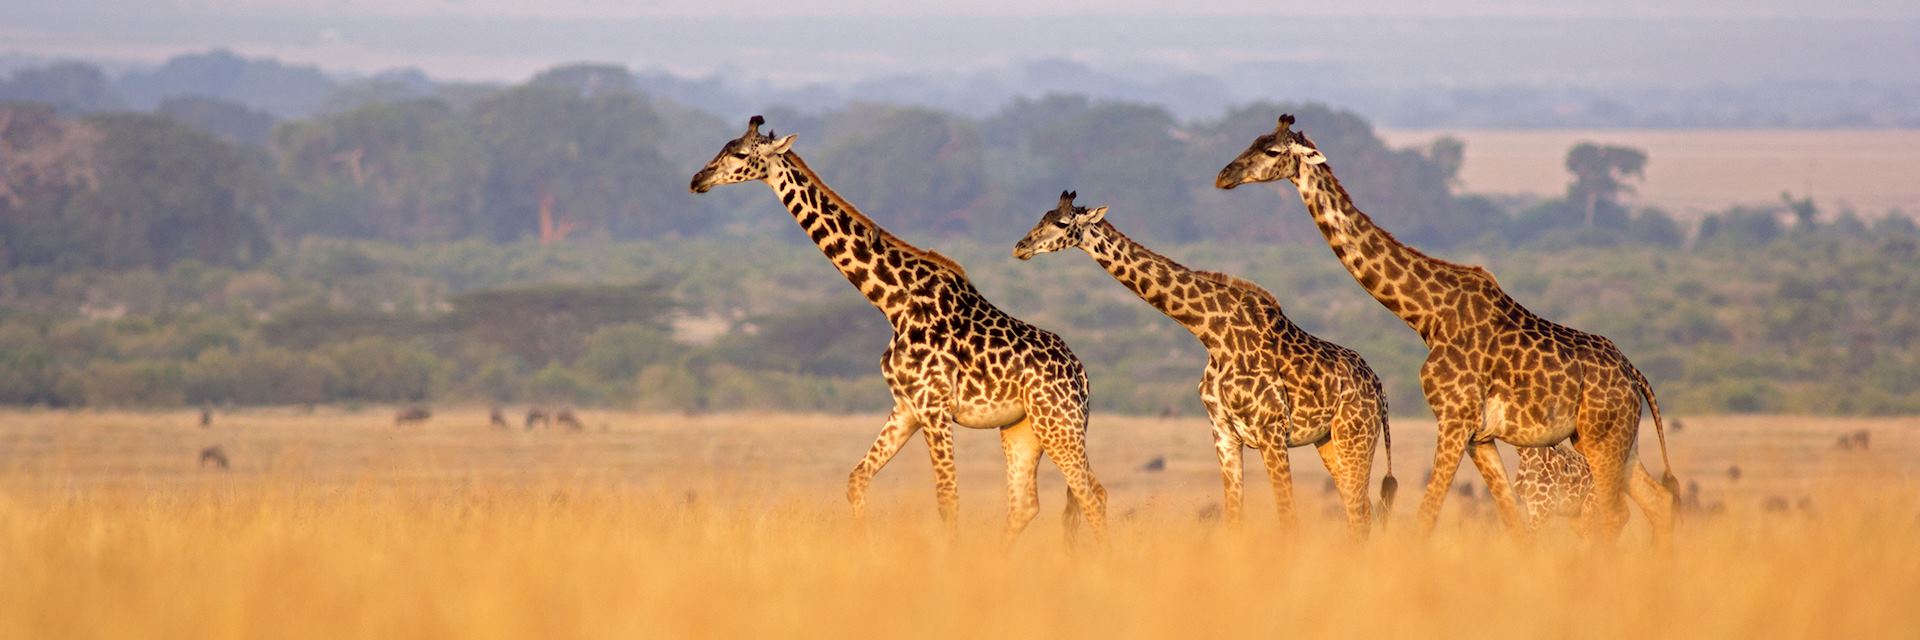 Giraffe in savannah